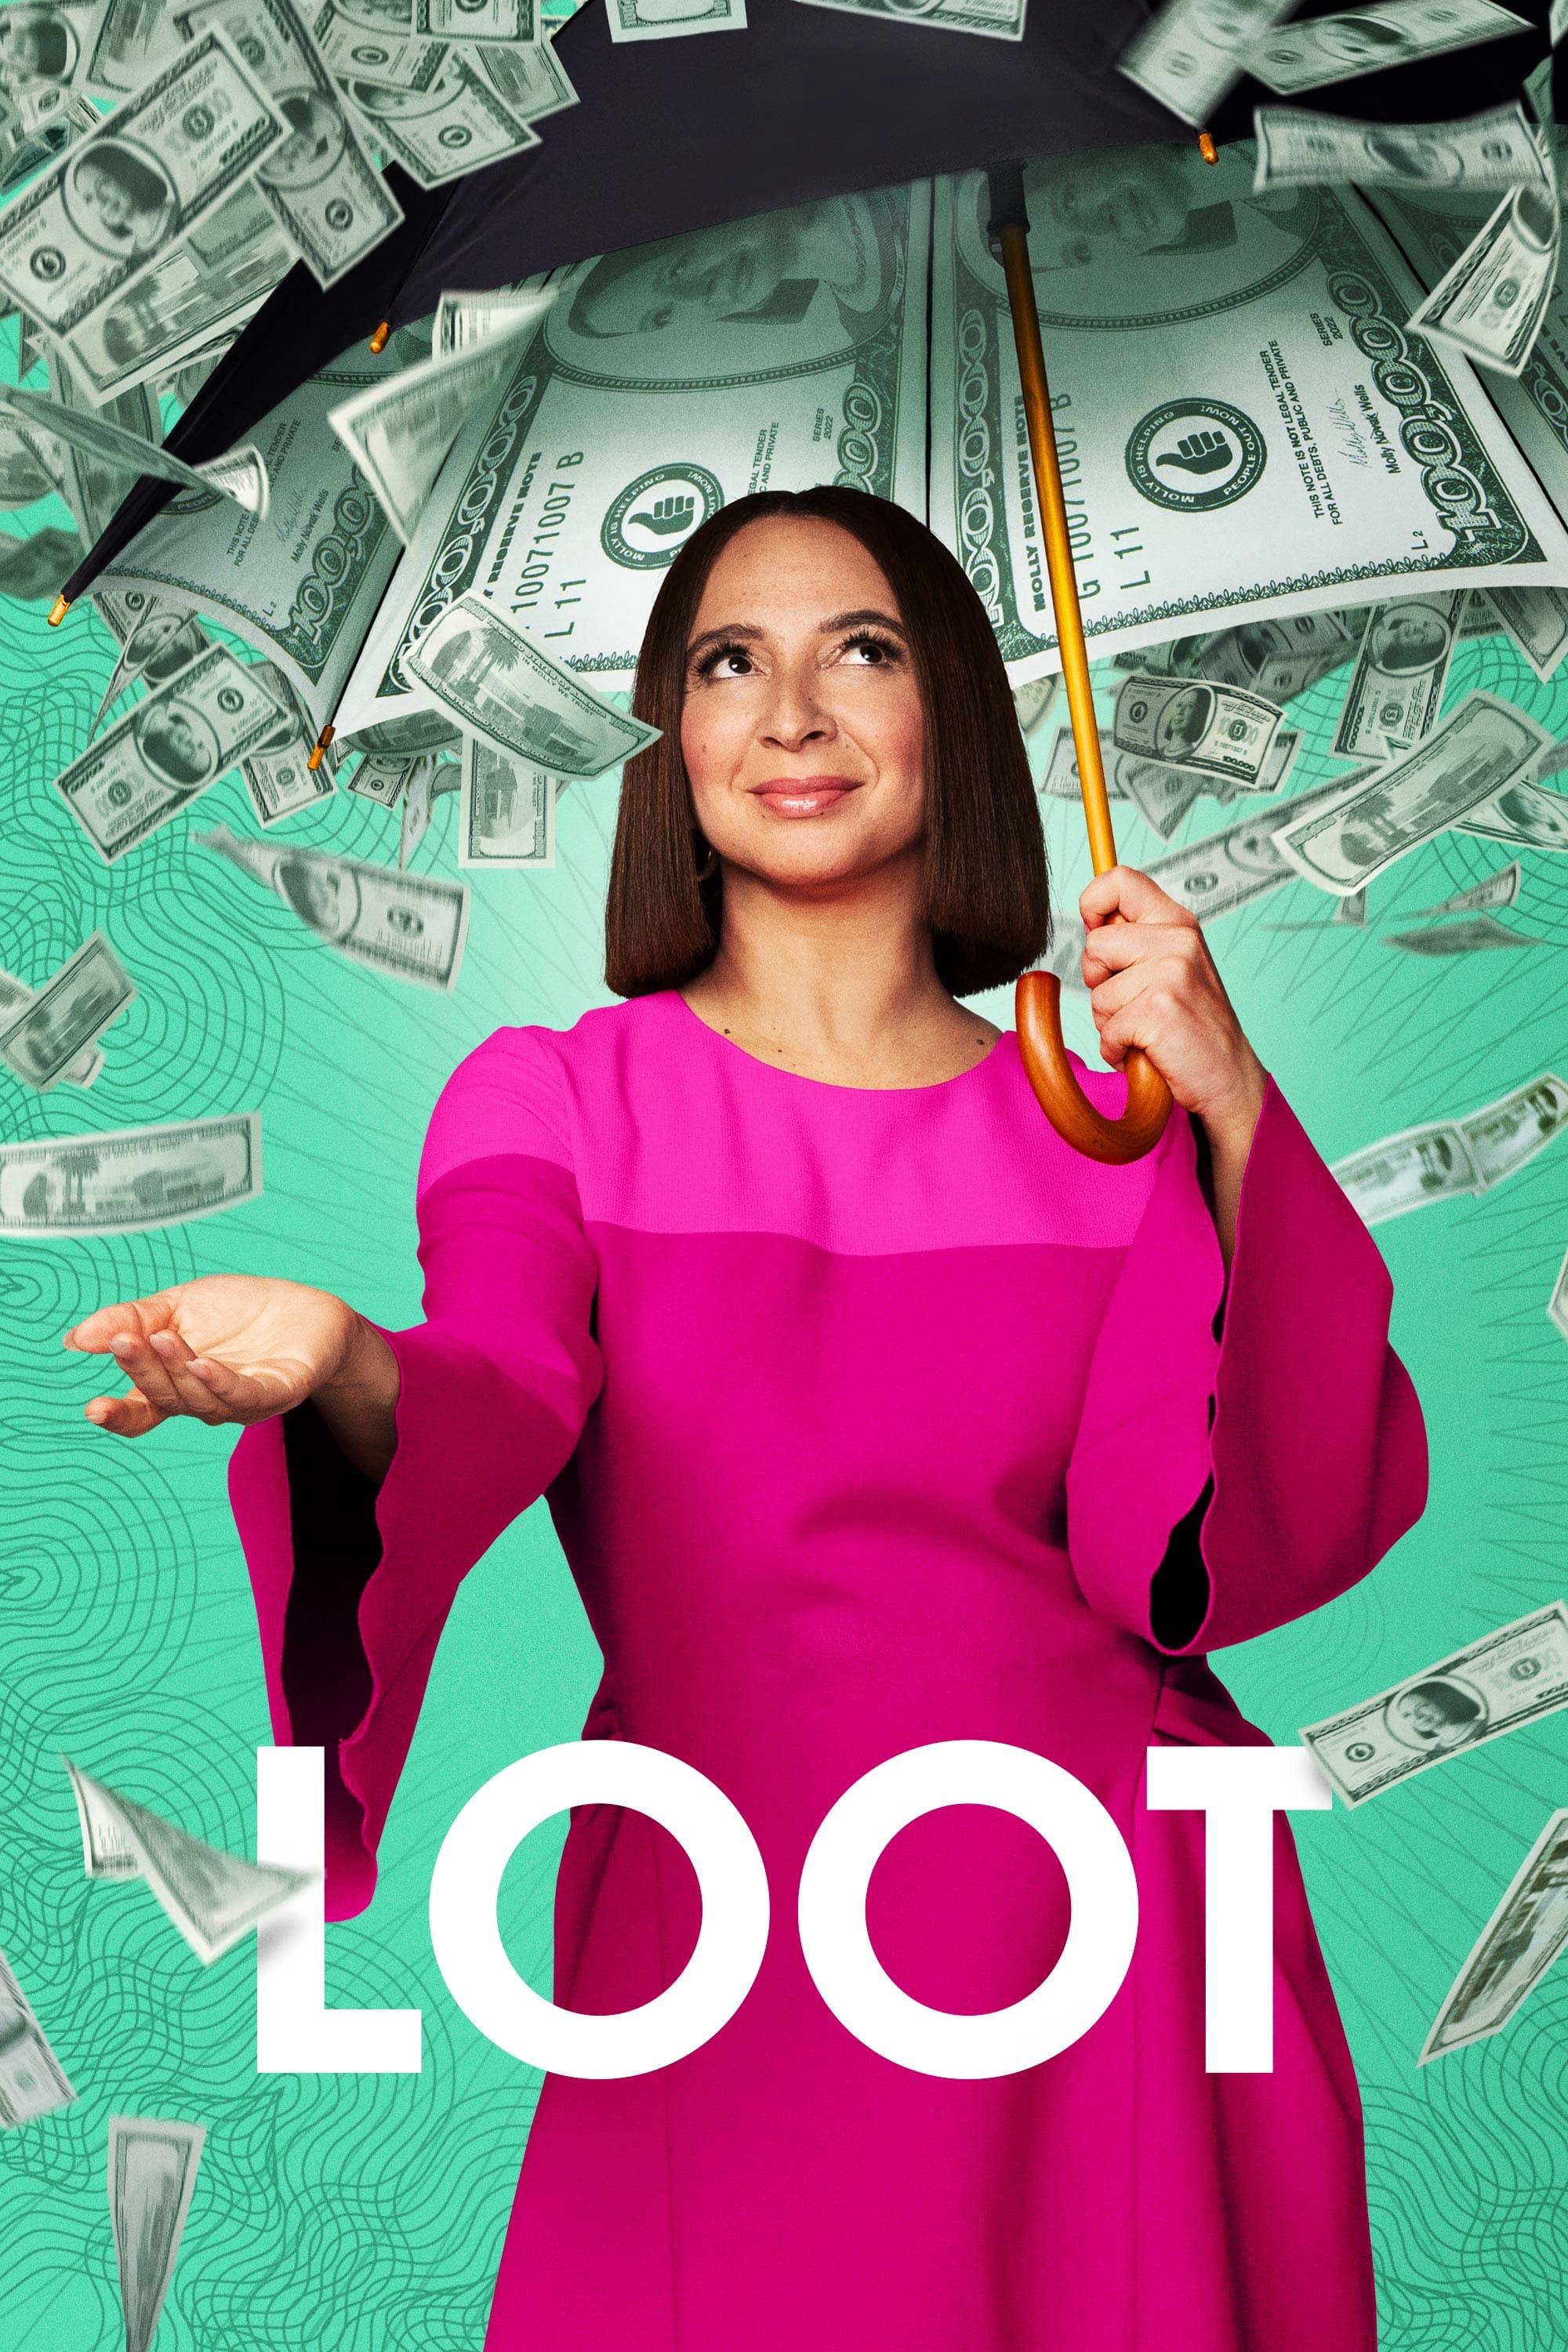 Poster Phim Loot (Loot)